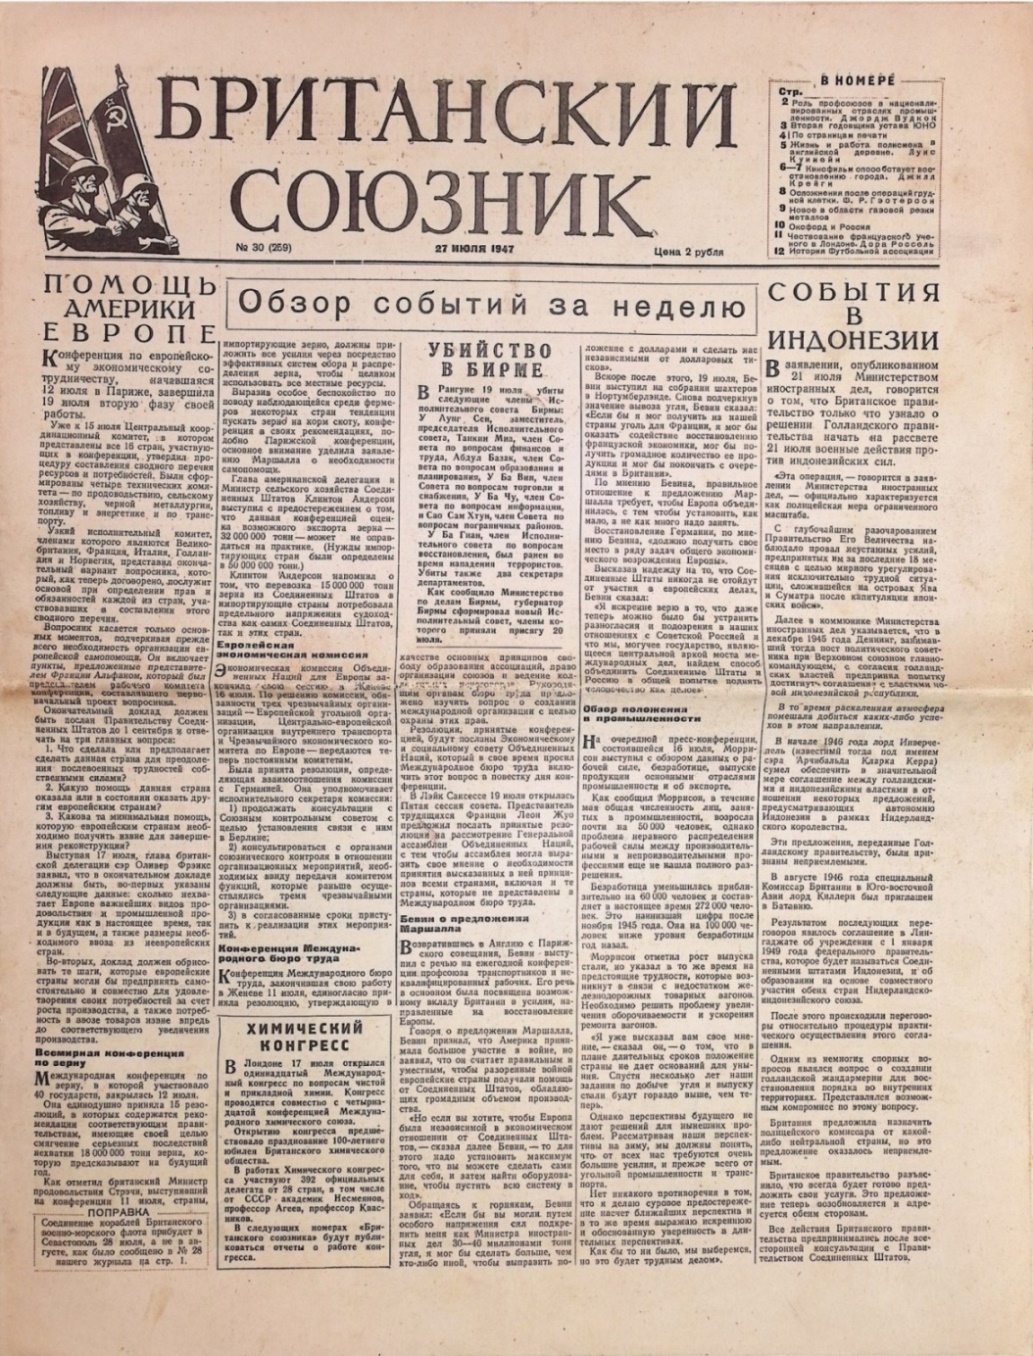 Газета "Британский союзник" № 30 (259) від 27 липня 1947р.